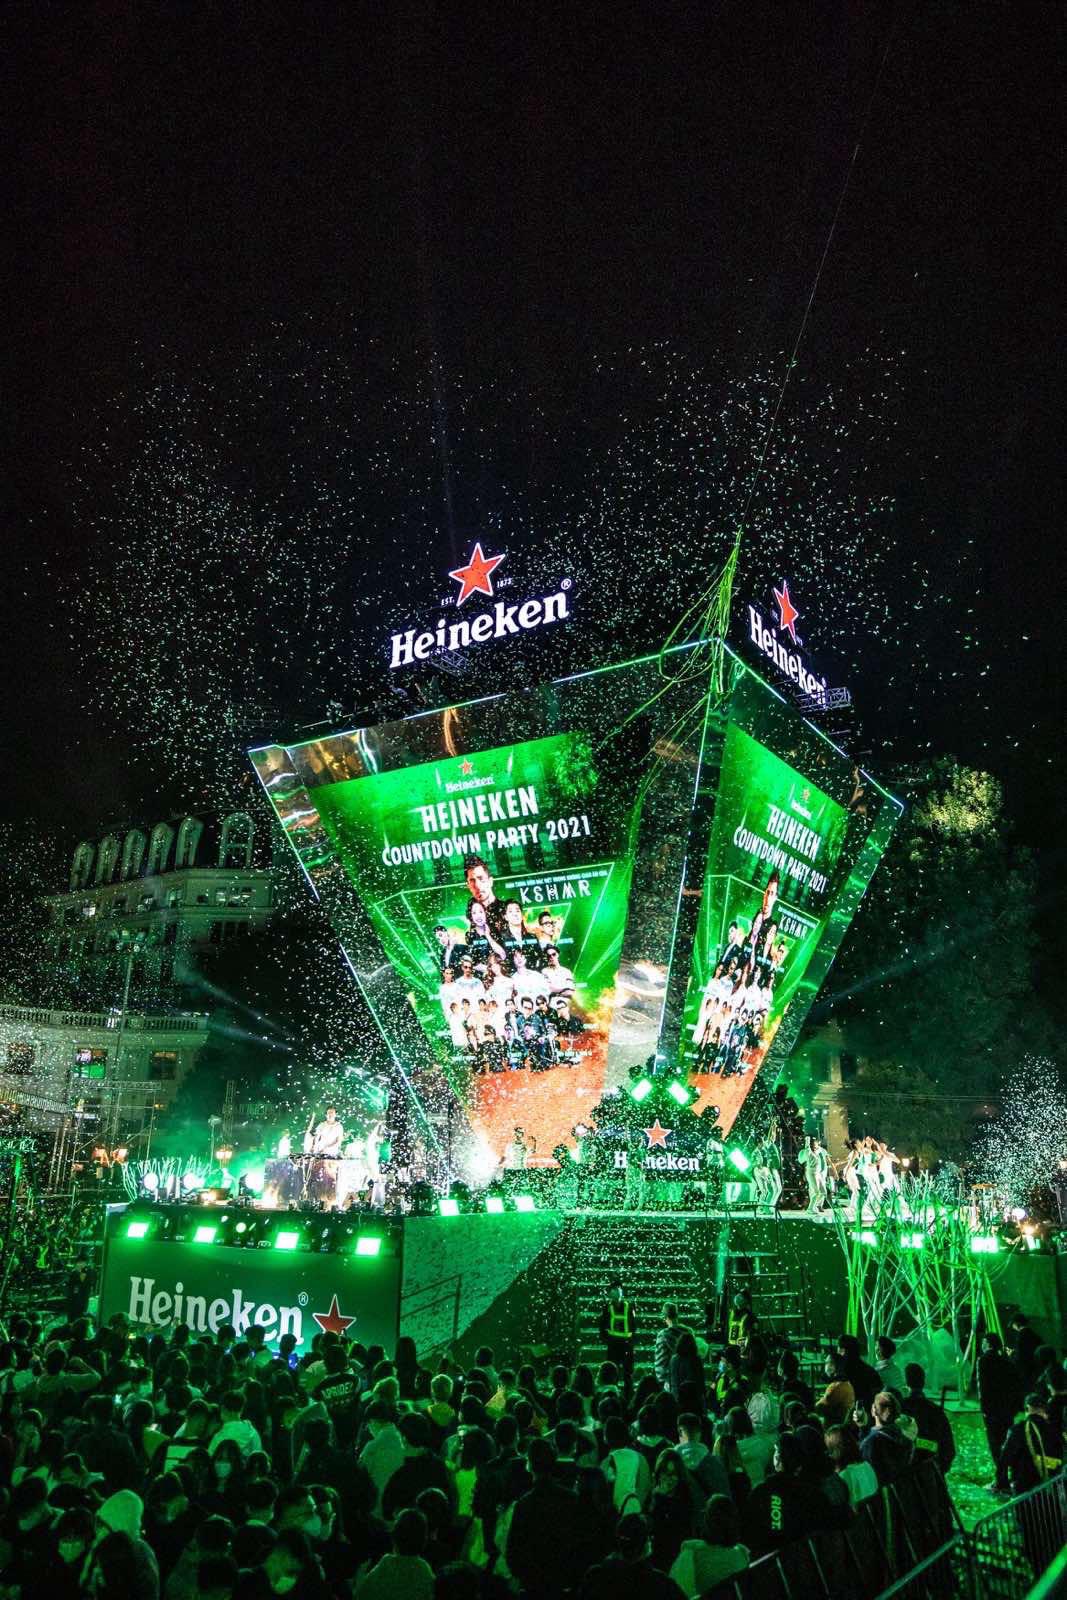 Vinhomes và Heineken “chơi lớn”, mời DJ Top 100 thế giới đến với Đại nhạc hội Countdown “hot” bậc nhất miền Bắc - Ảnh 1.